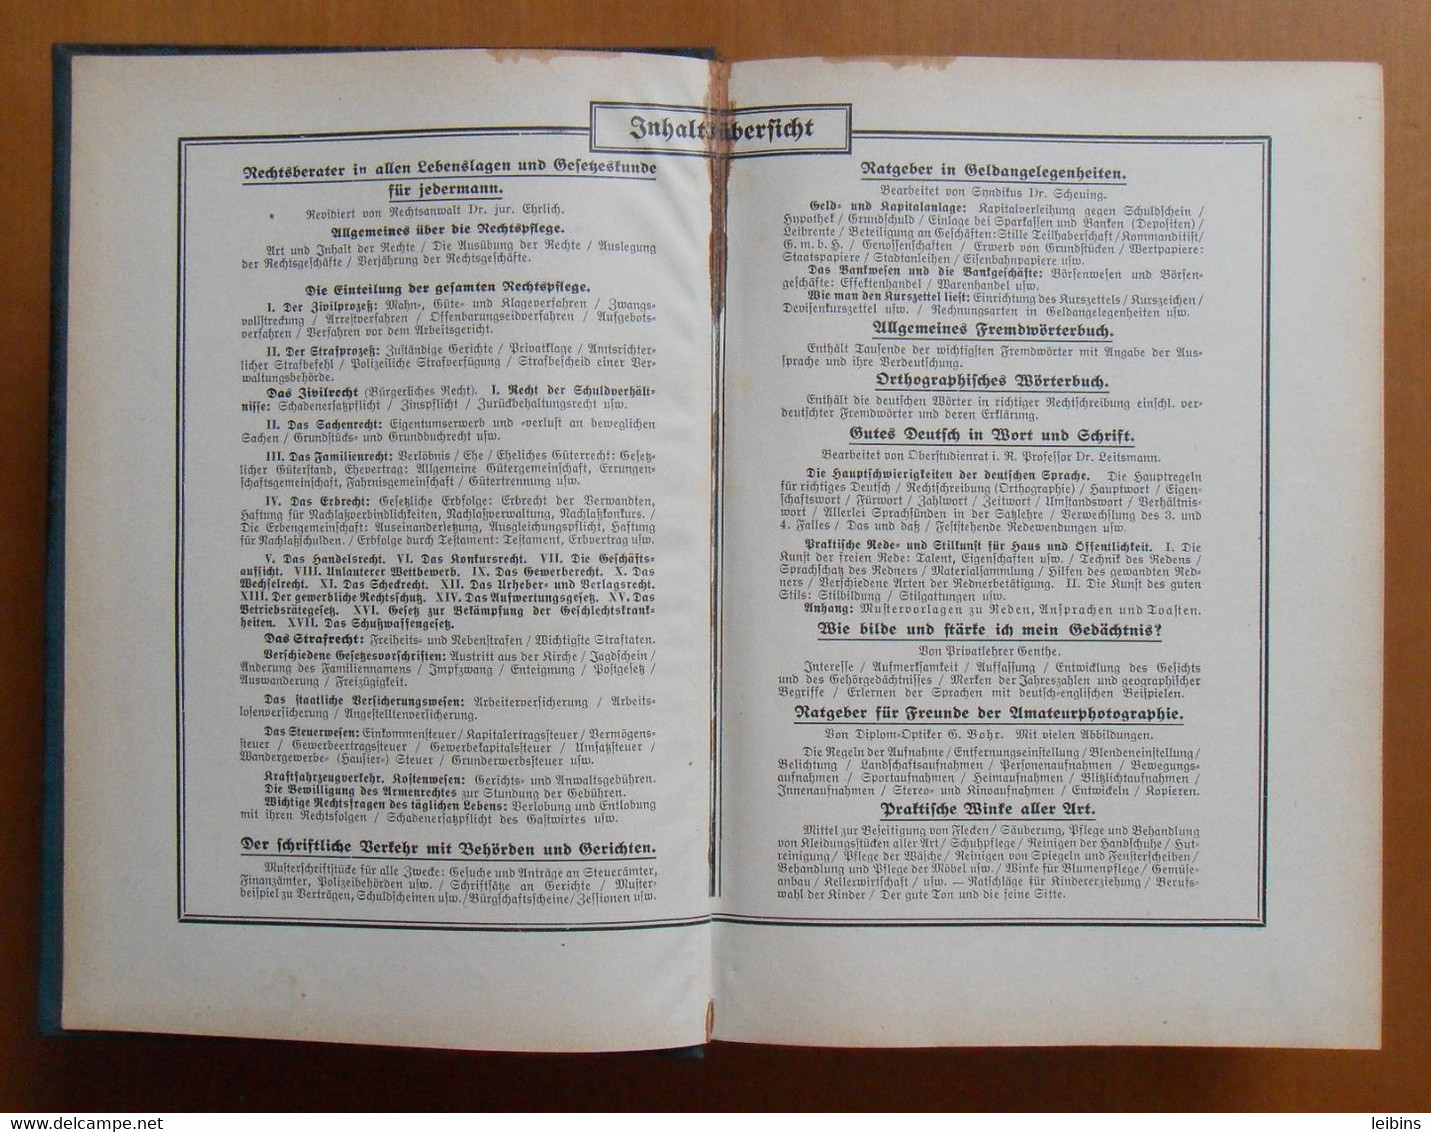 Bilz Handbuch Des Wissens - Ehrlich, Dr. Jur. - Encyclopedia